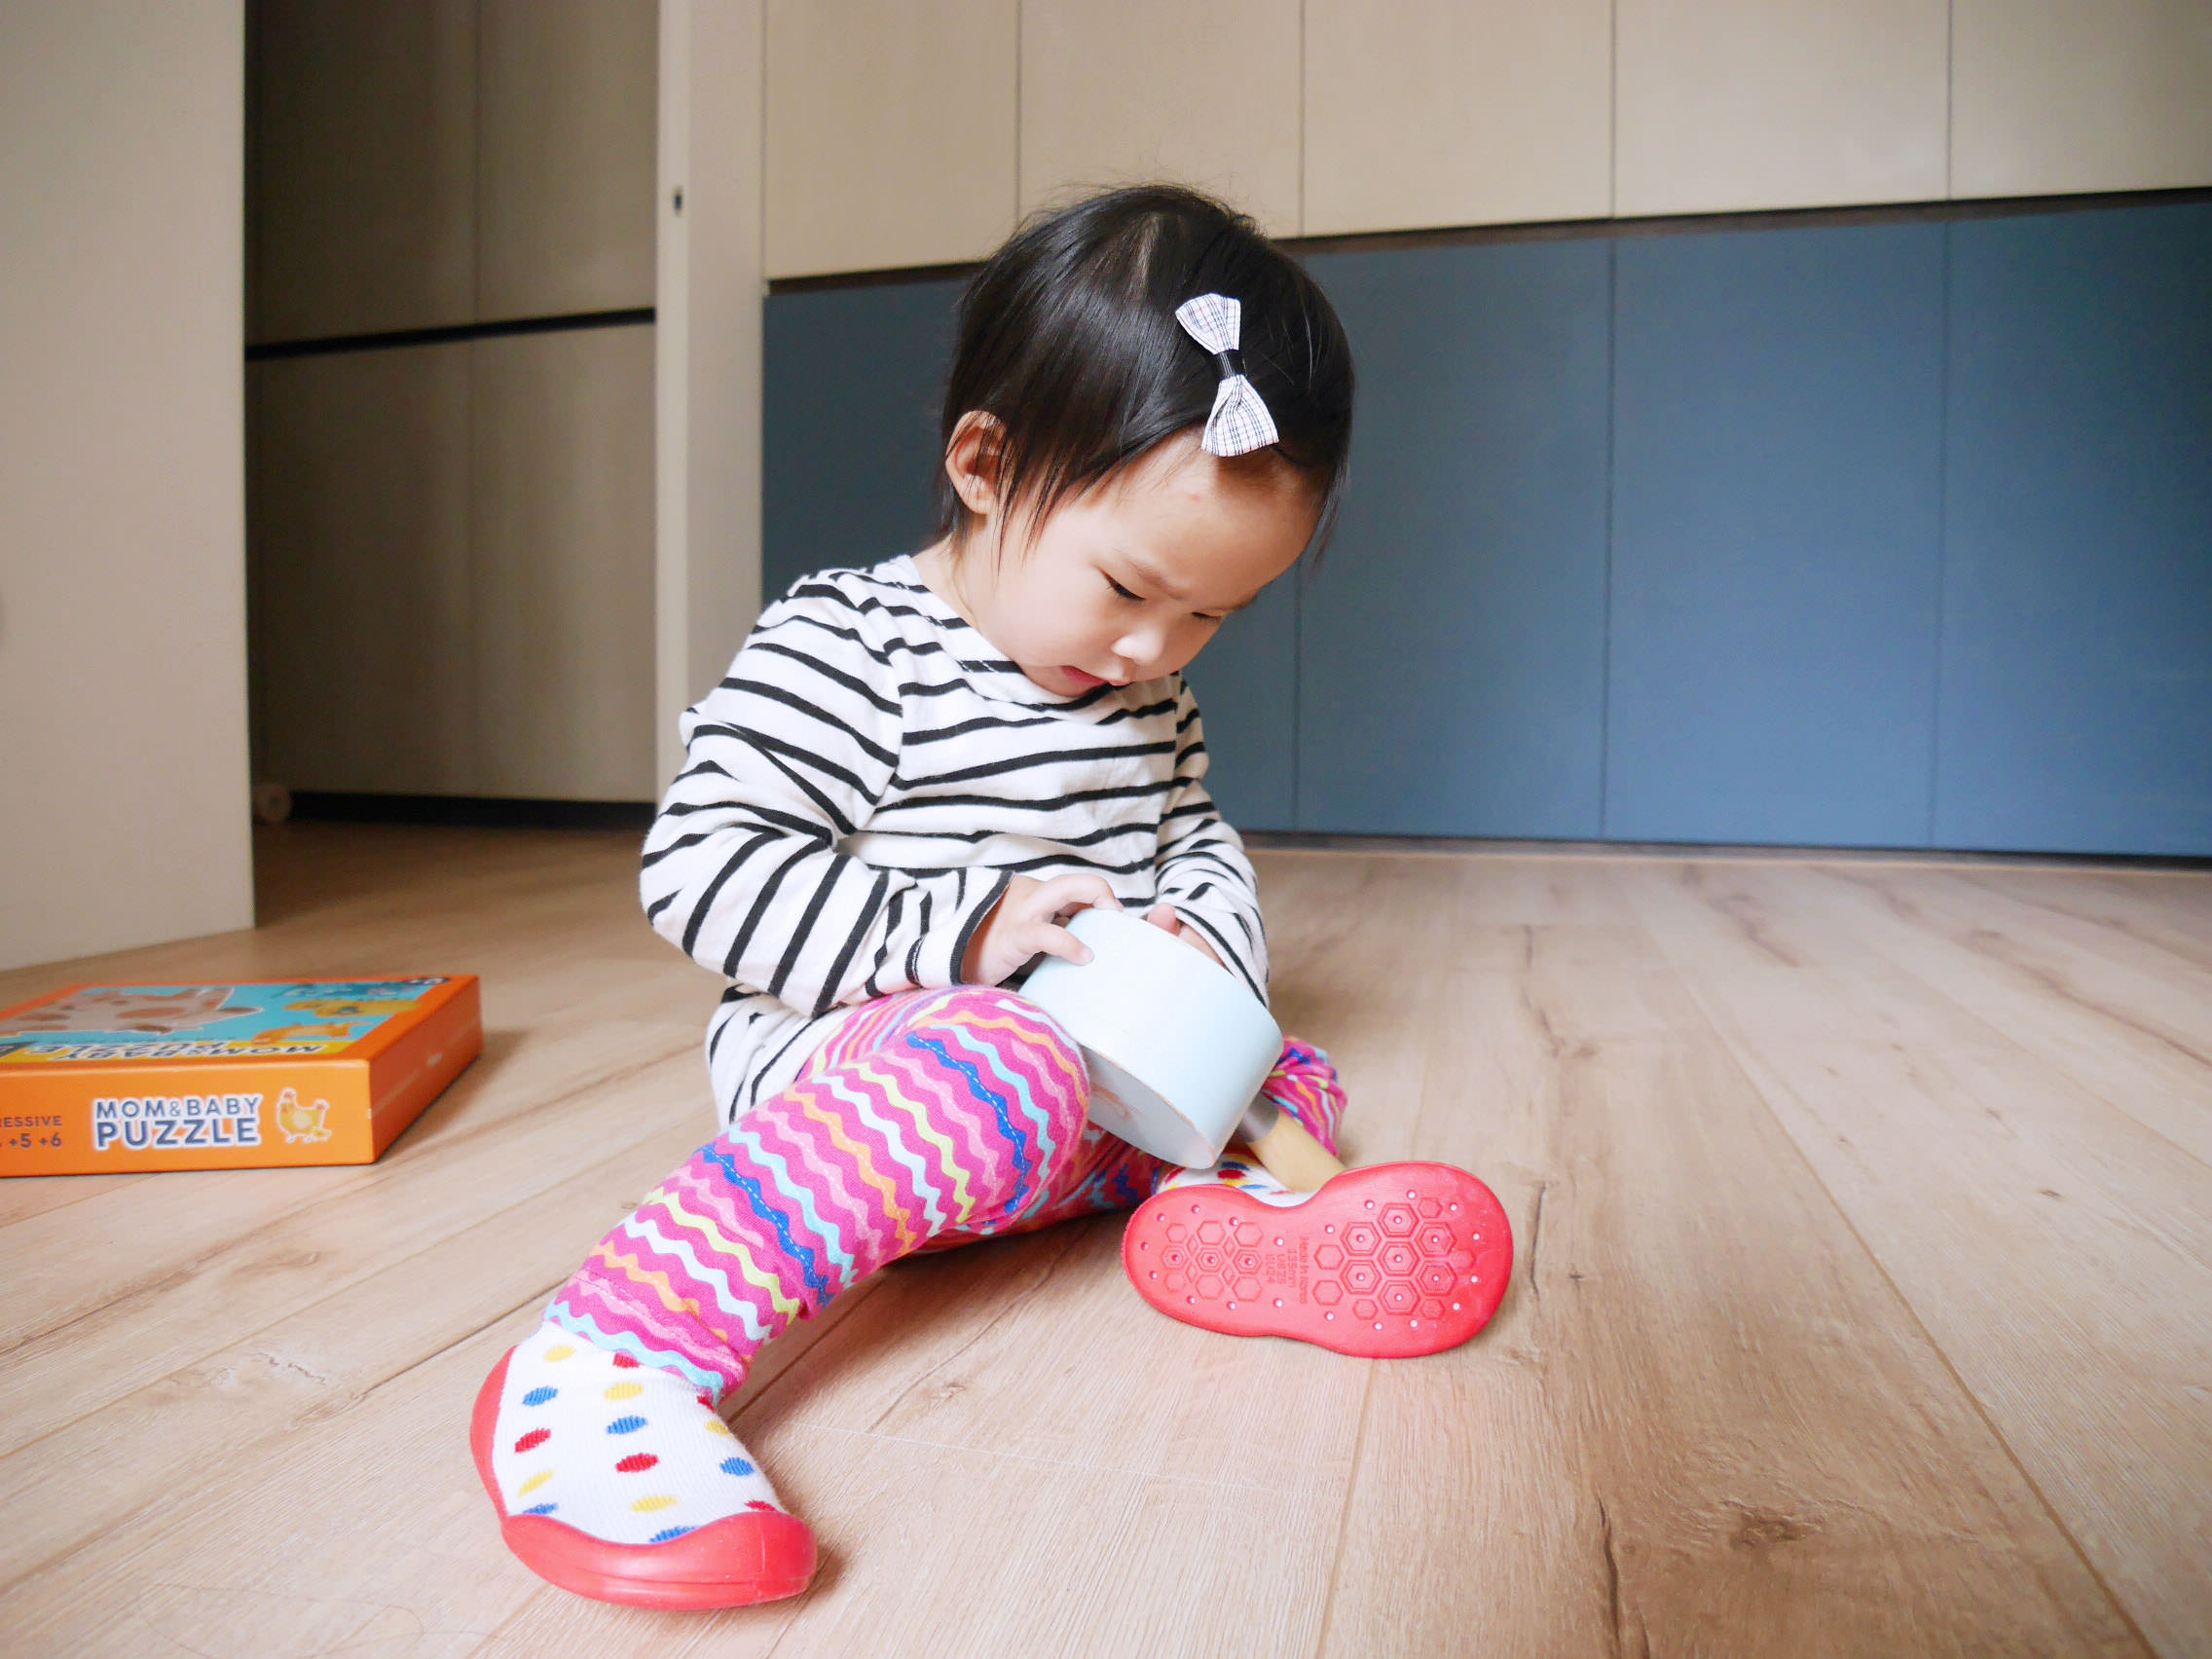 [寶寶] 寶寶的第一雙學步鞋,是襪襪也是鞋子的韓國GGOMOOSIN襪鞋